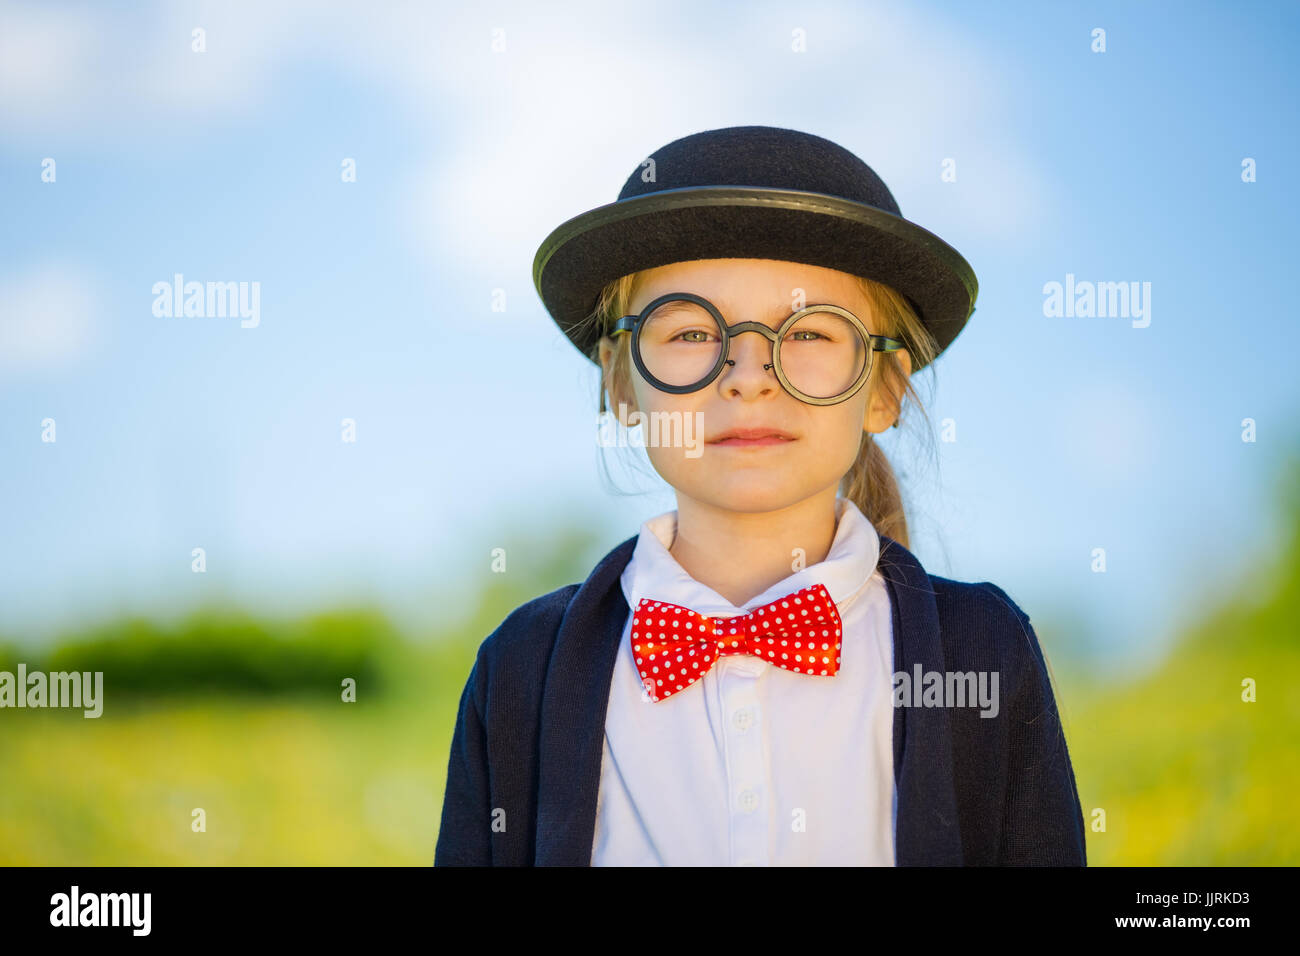 Funny little girl à noeud papillon et chapeau melon Photo Stock - Alamy